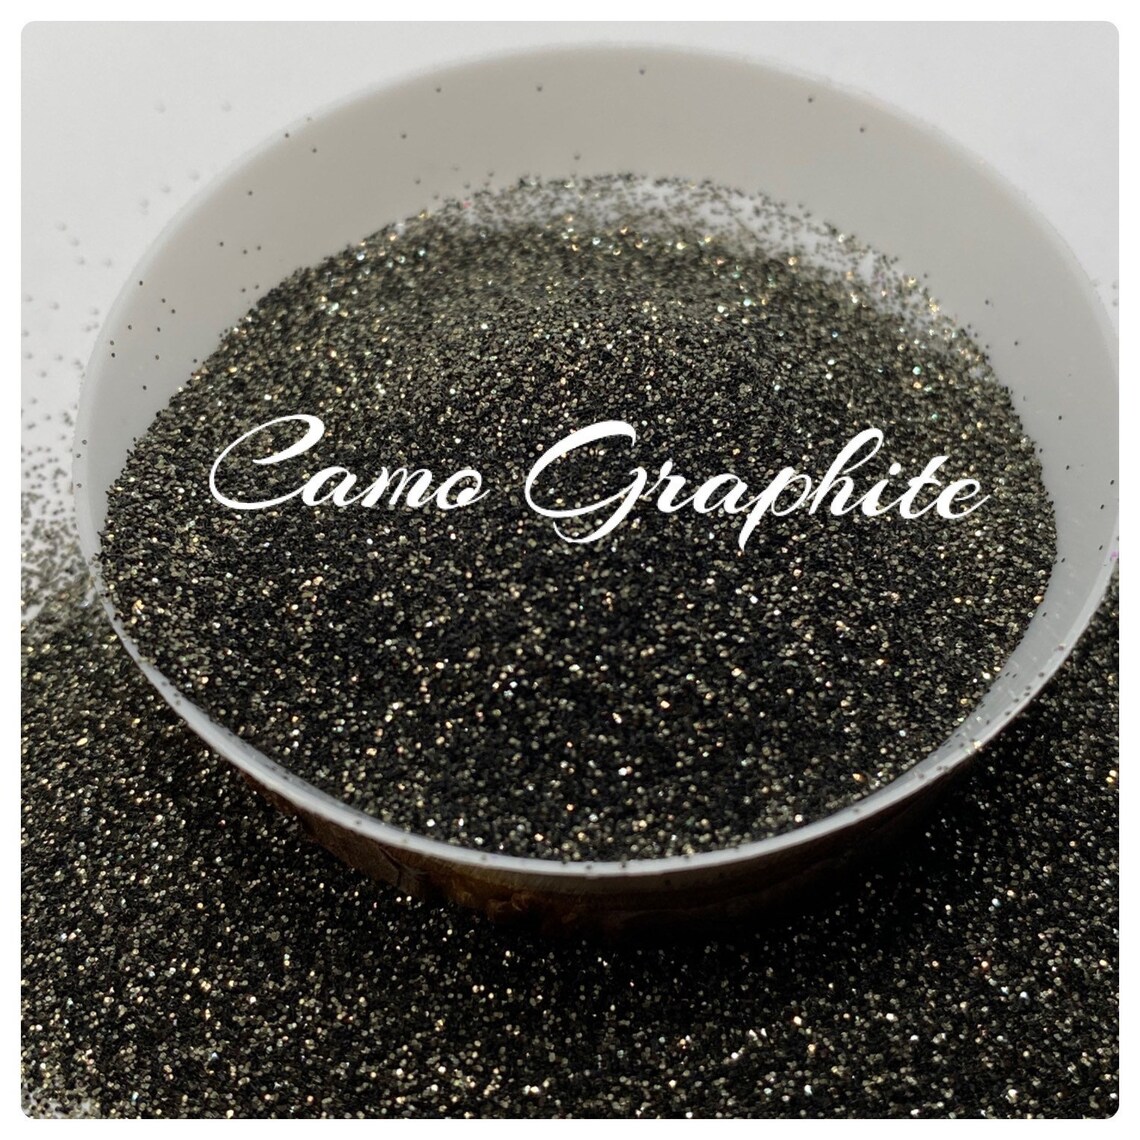 Camo Graphite: Metallic golden black fine glitter 1oz by TwoFaced Glitters